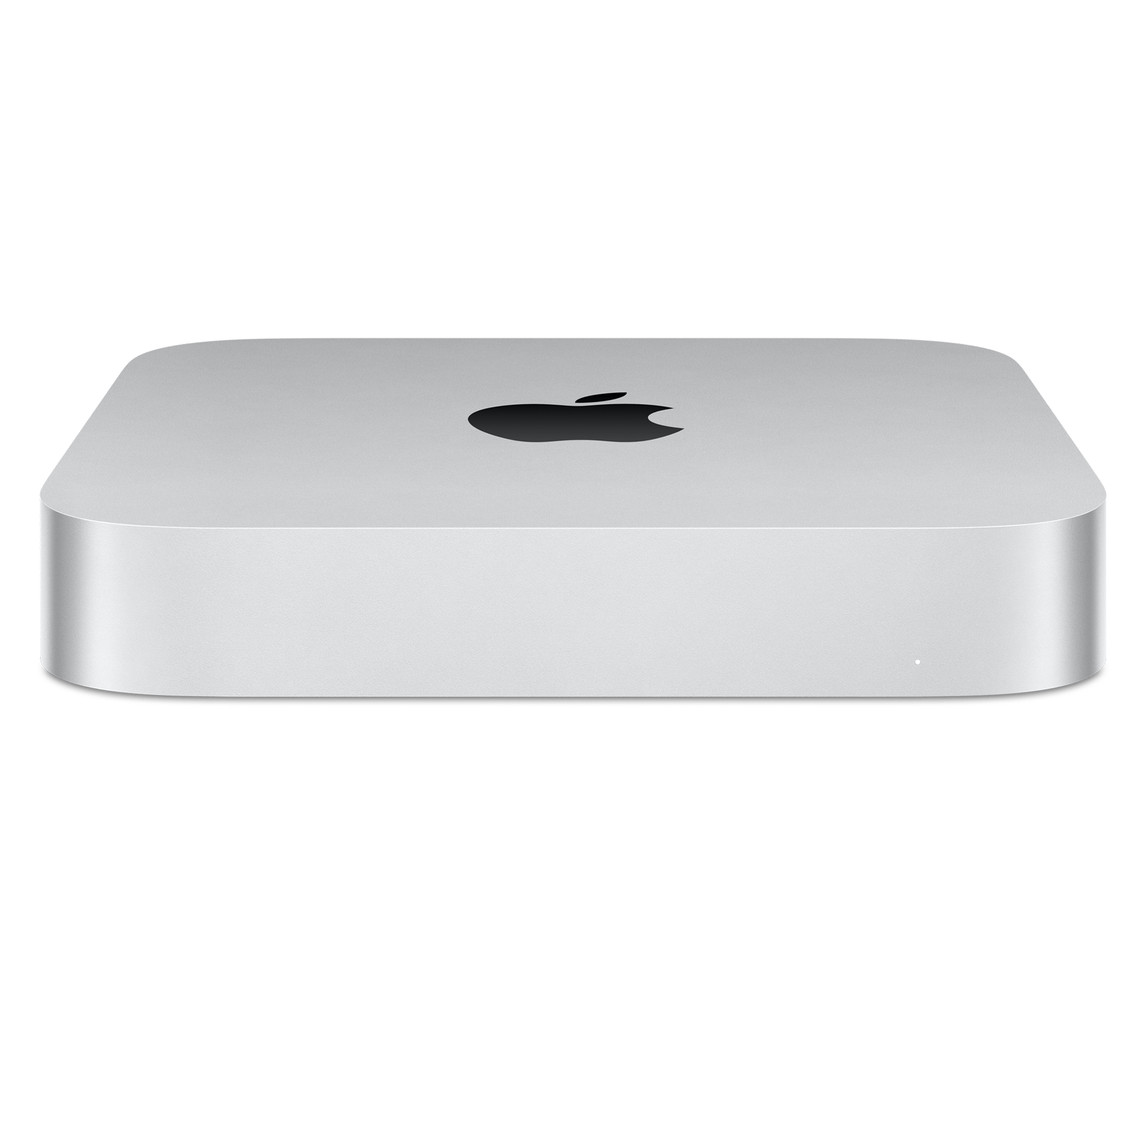 Vue oblique de la face avant du Mac mini montrant le logo Apple au sommet